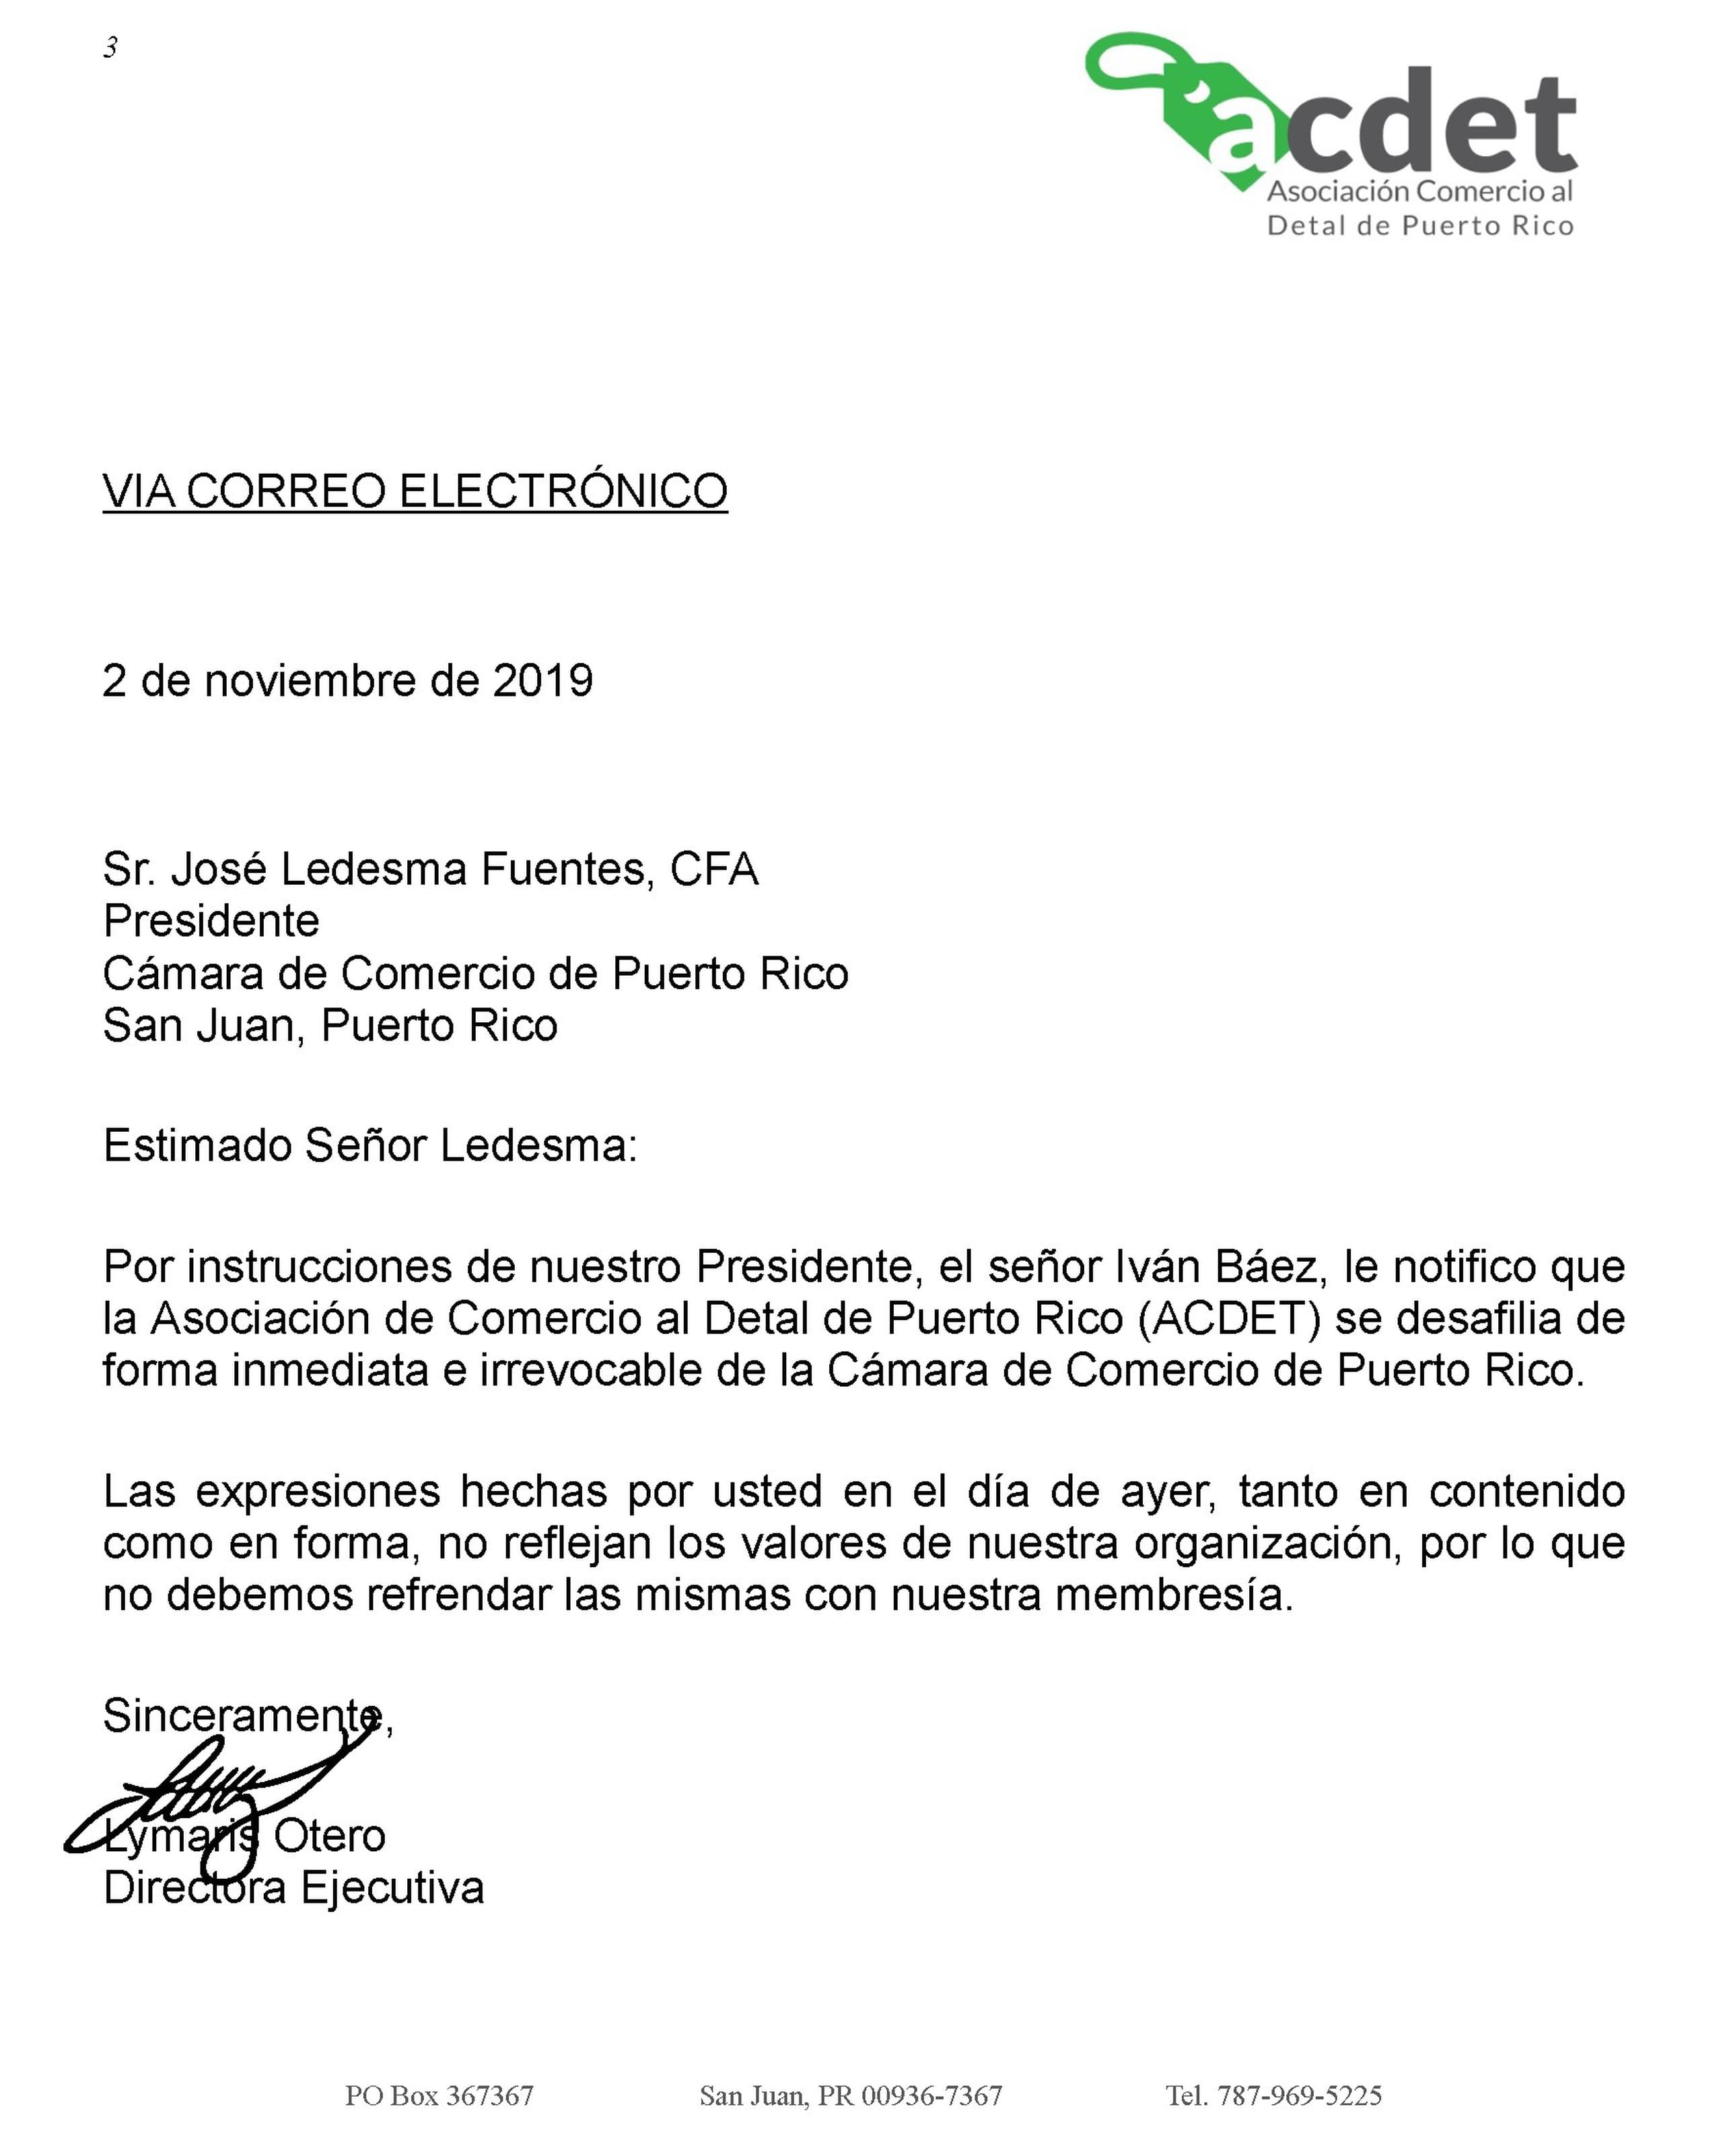 Carta de la Asociación de Comercio Al Detal enviada a la Cámara de Comercio de Puerto Rico. (Suministrada)